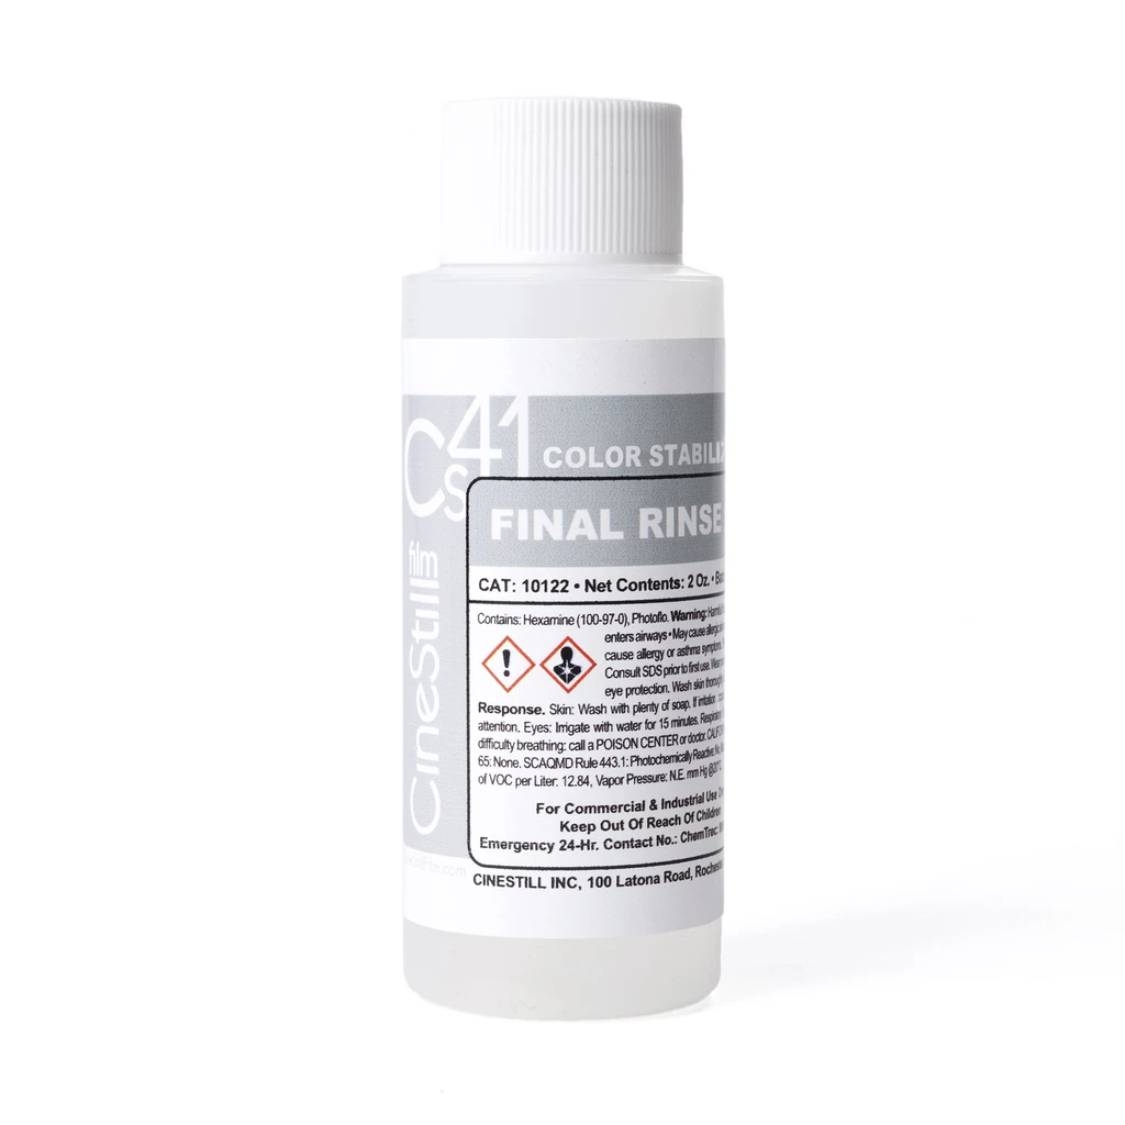 Cinestill Cs41  Color Stabilizer (Final Rinse)